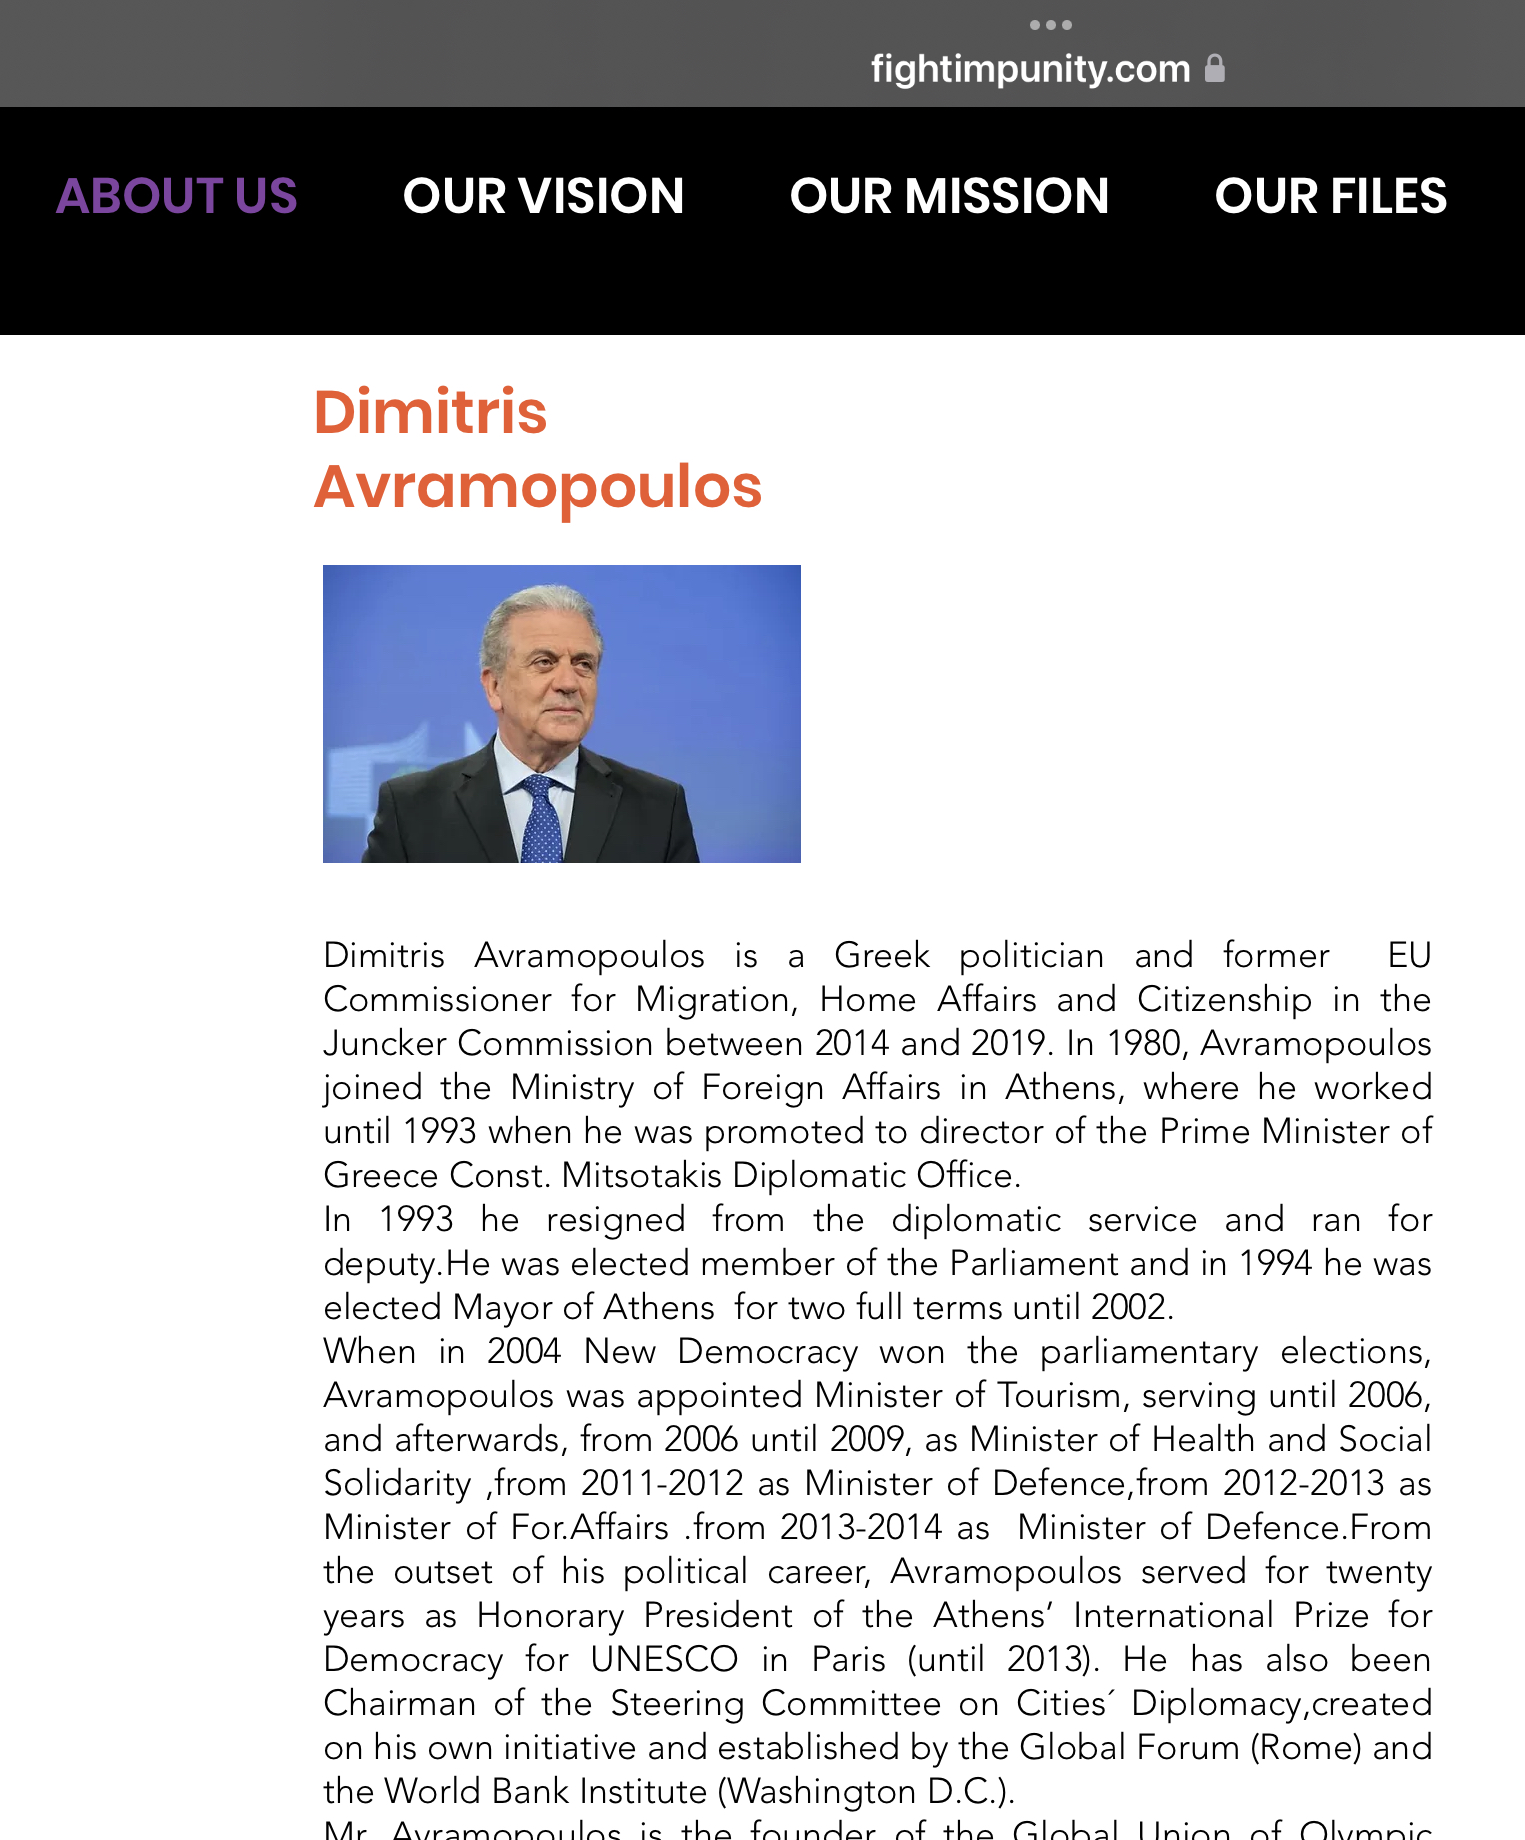 Ο Αβραμόπουλος ήταν μέλος της ΜΚΟ του Ιταλού πρώην ευρωβουλευτή Panzeri που συνελήφθη μαζί με την Καϊλή